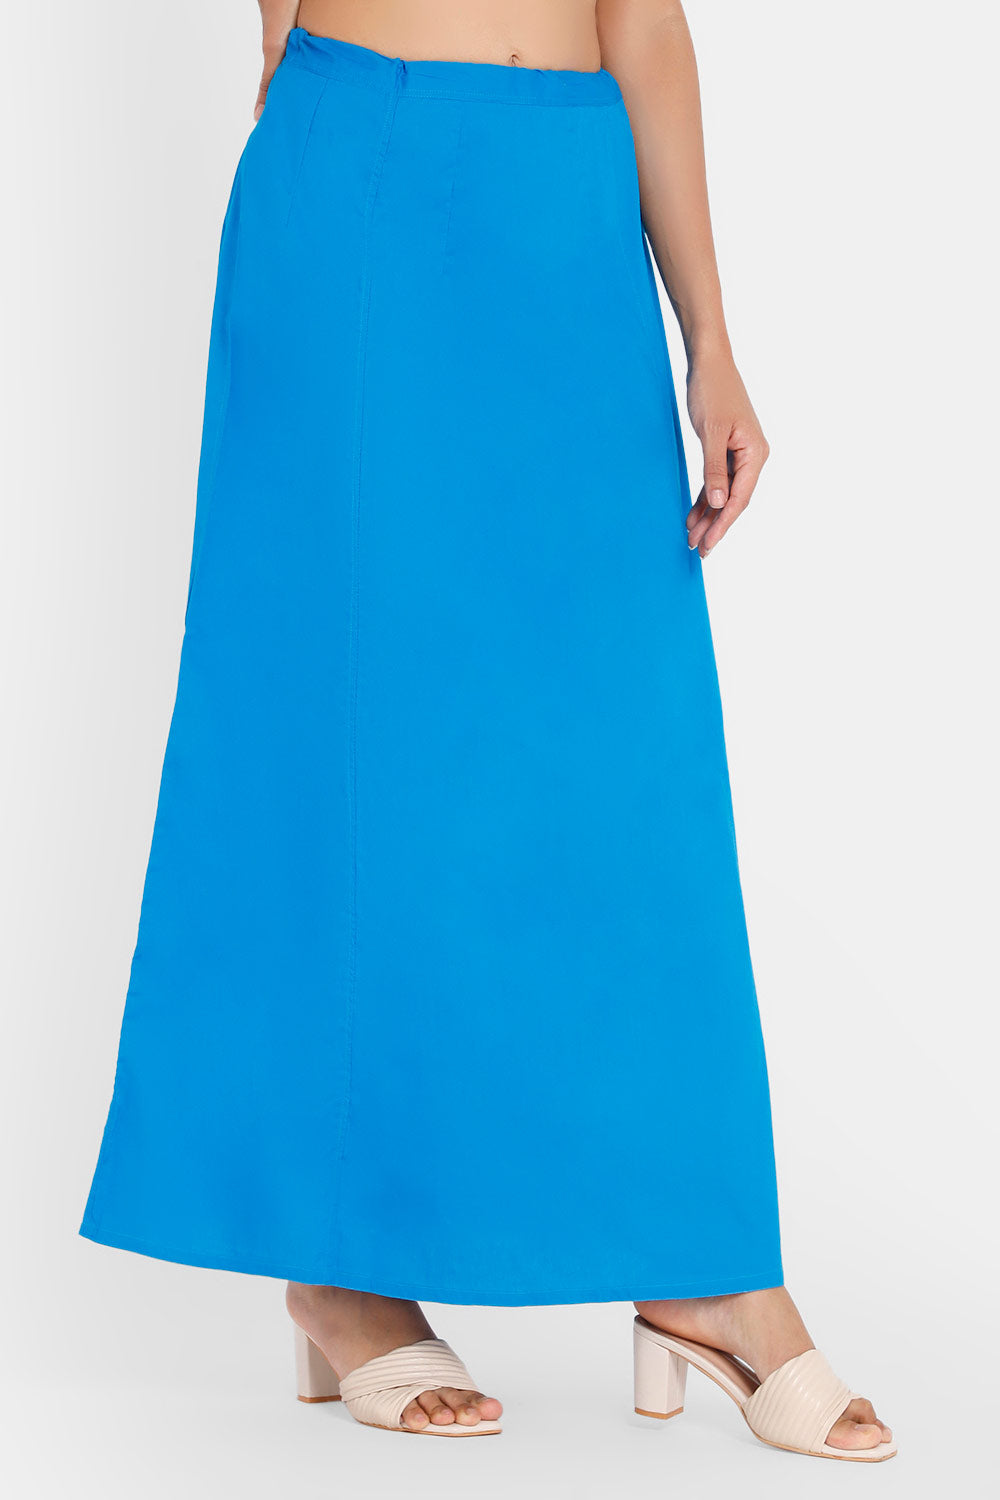 Women's Satin Petticoat Saree Underskirt Sari Underwear Free Size  Adjustable at Amazon Women's Clothing store